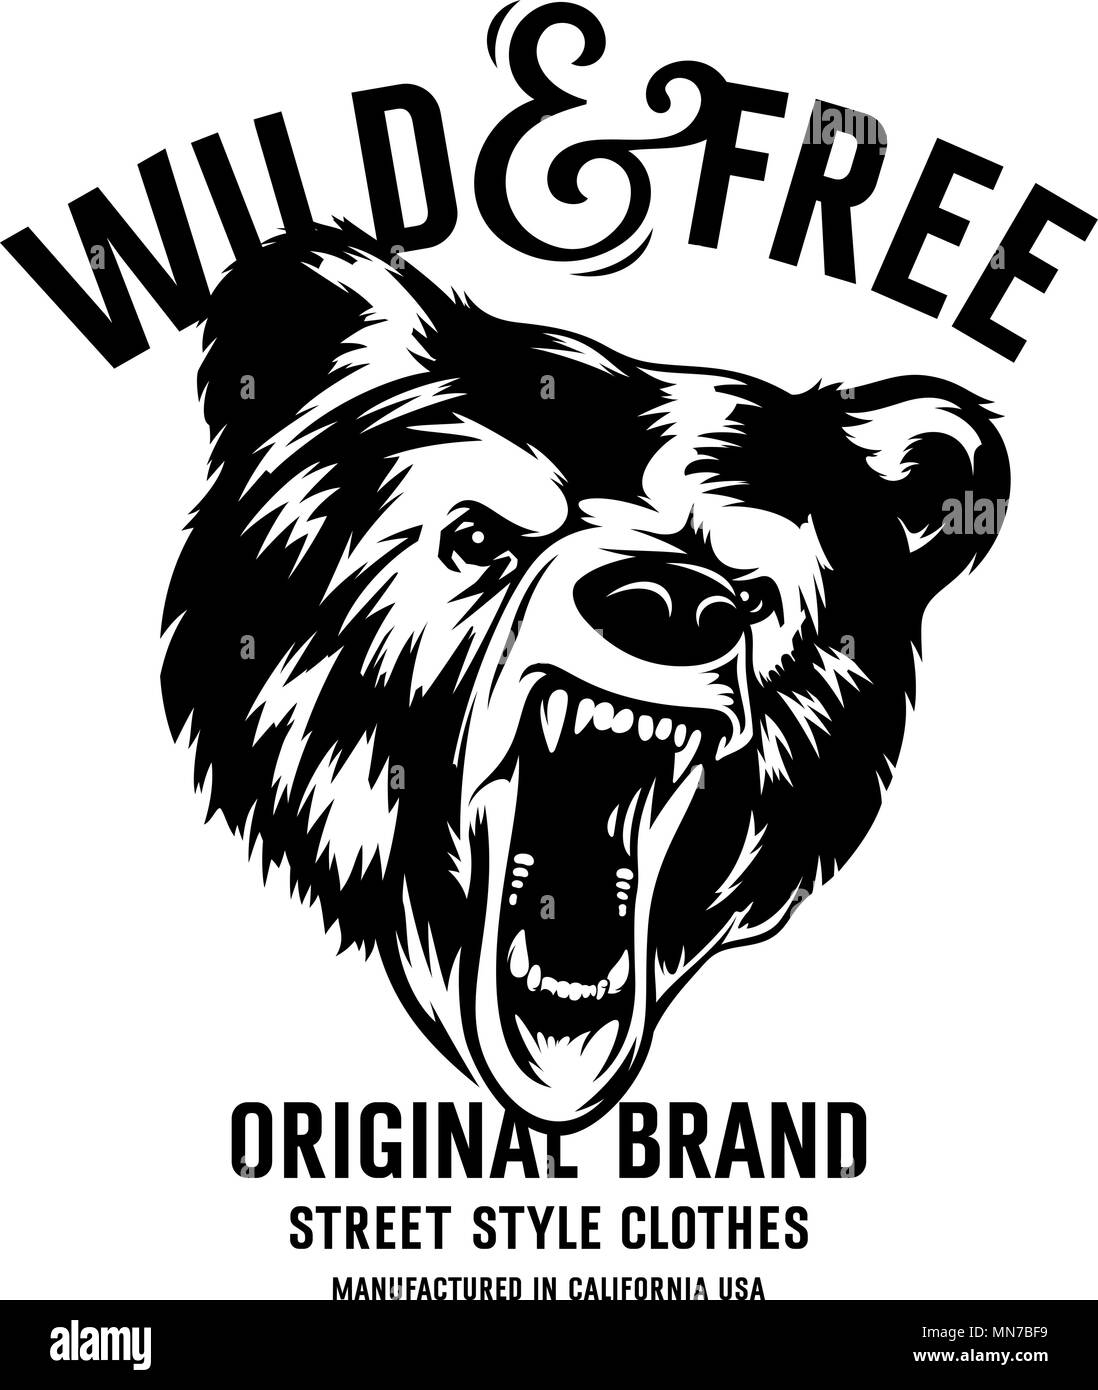 Sauvage et libre vintage typographie avec une tête d'un grizzly, t-shirt imprimer des graphiques Illustration de Vecteur